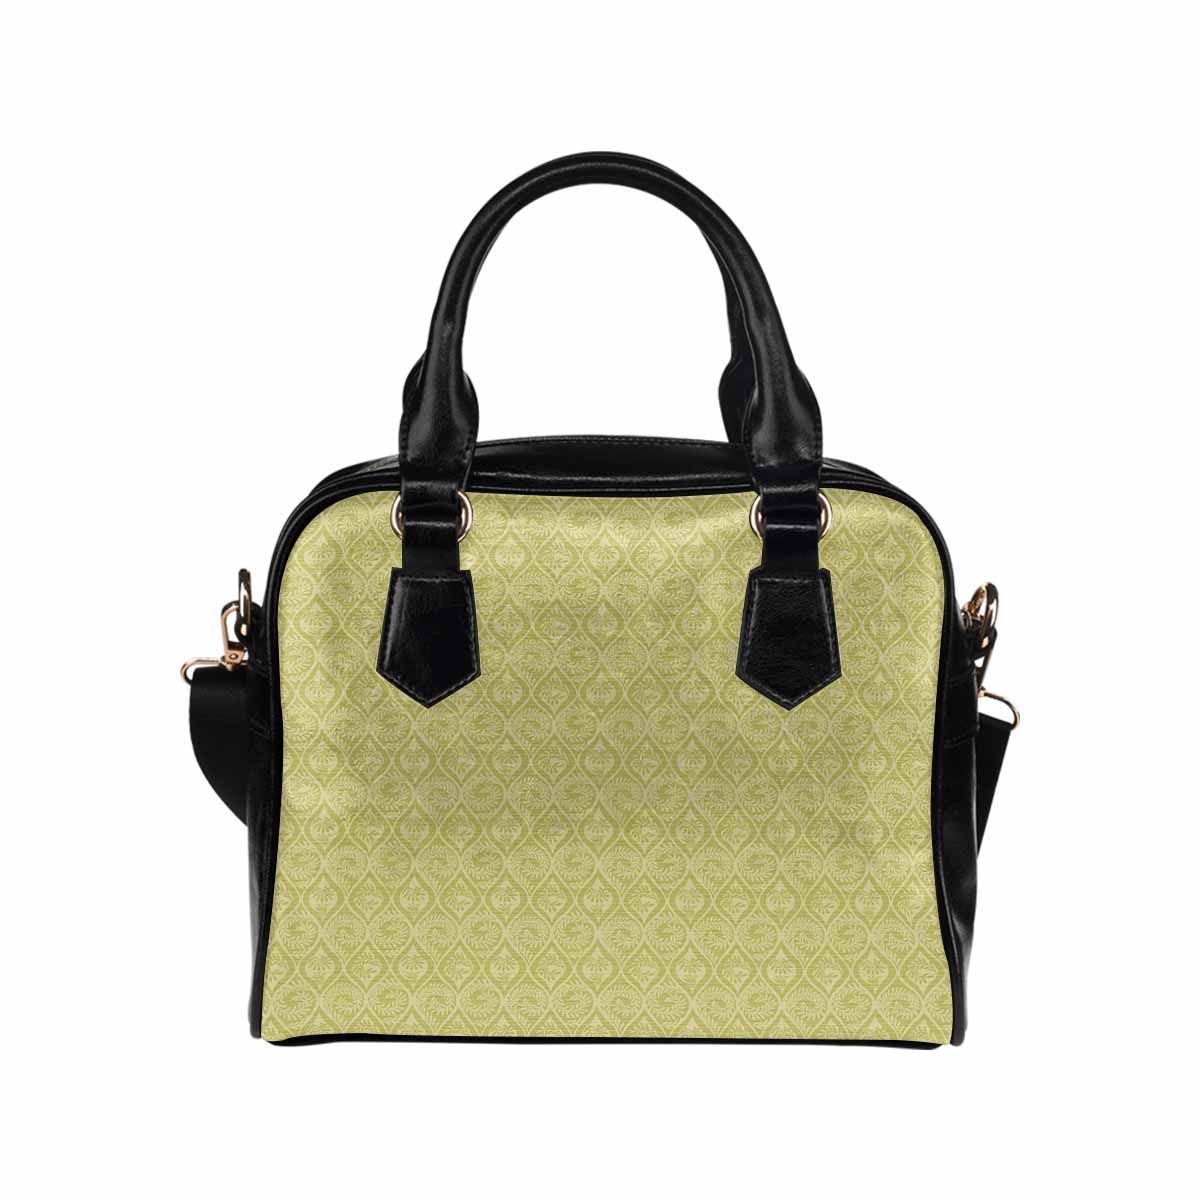 Antique general print handbag, MODEL1695341,Design 01